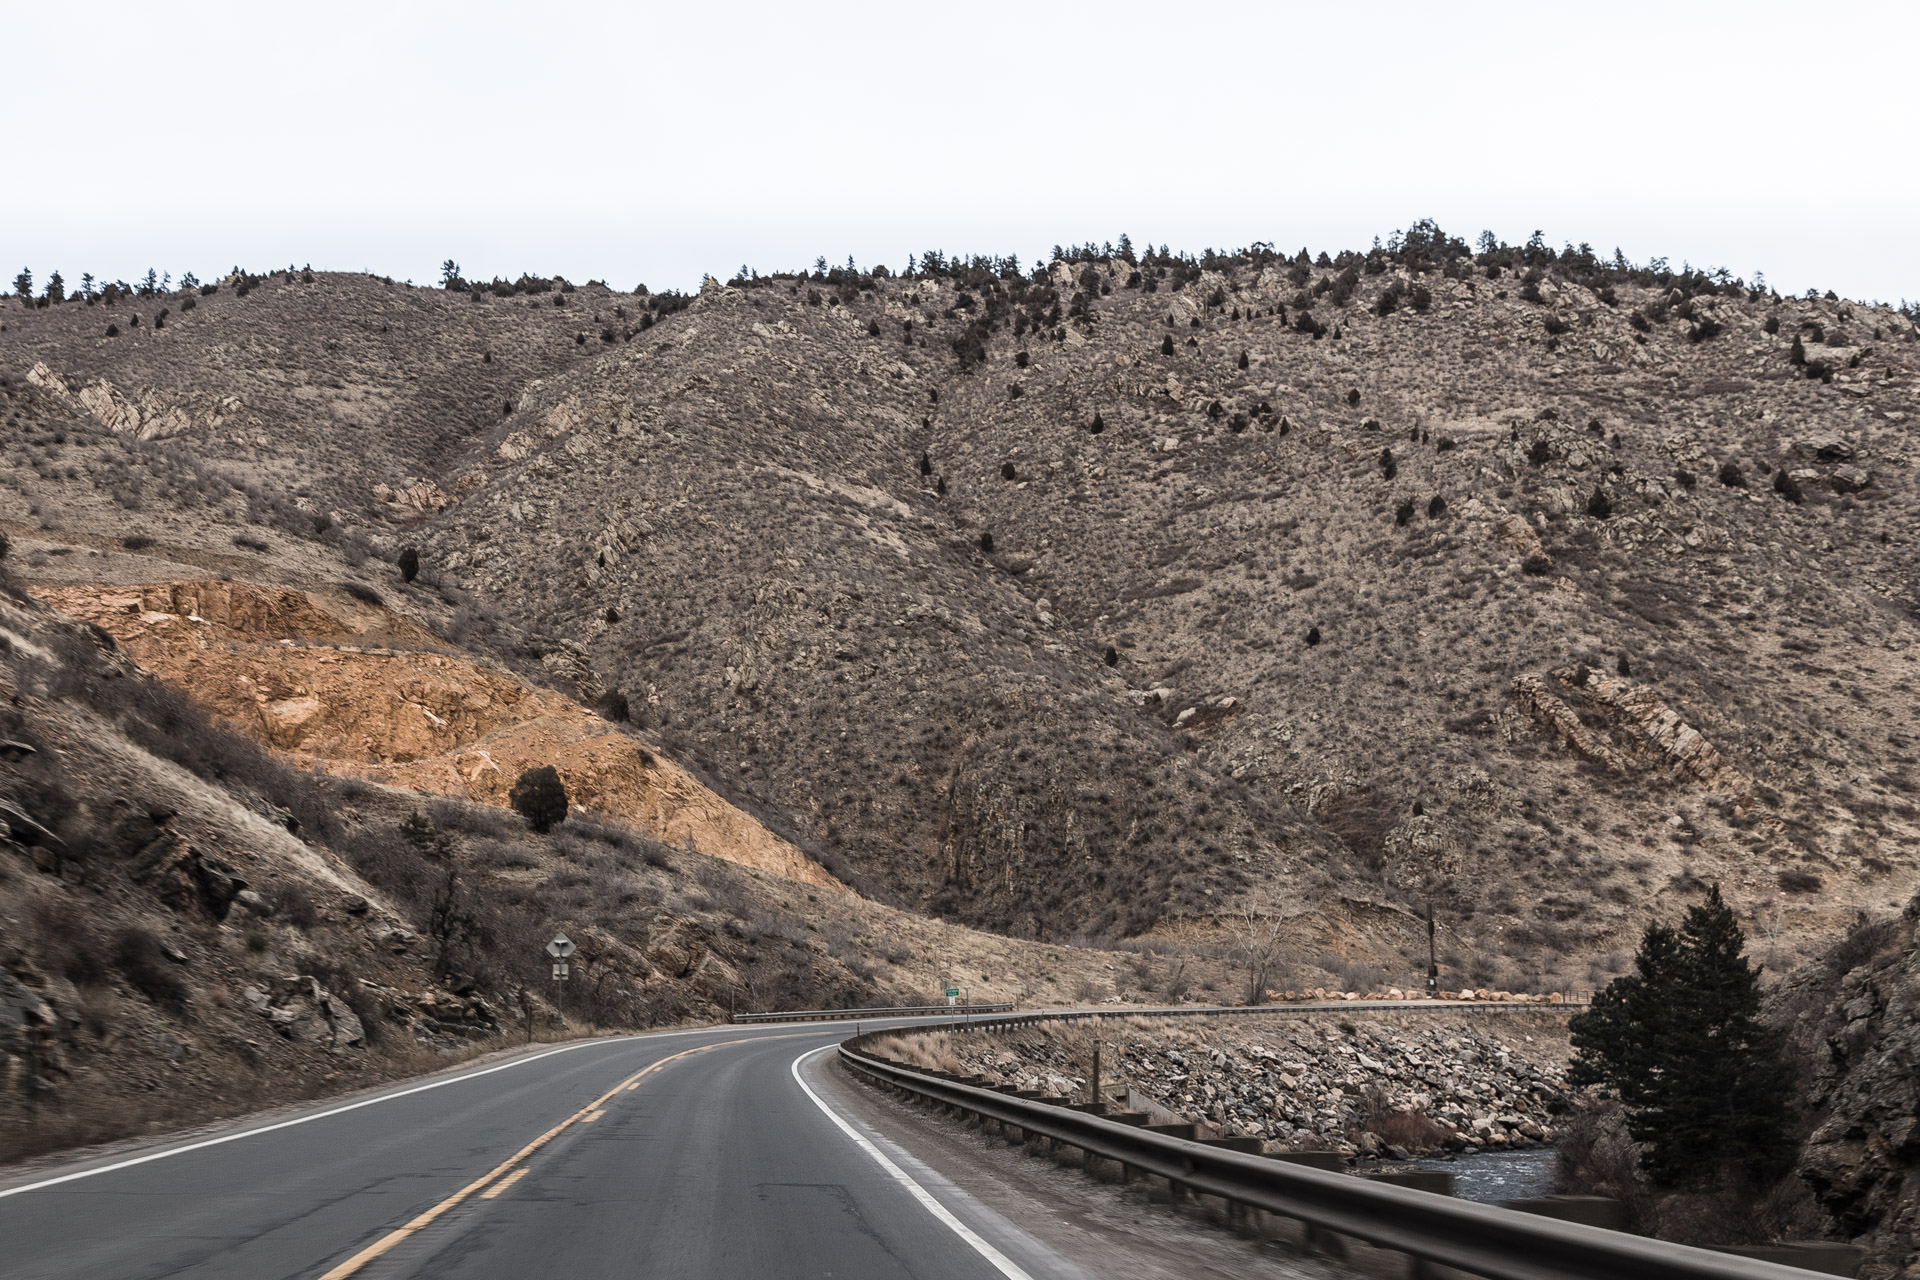 Video: A Colorado Rocky Road